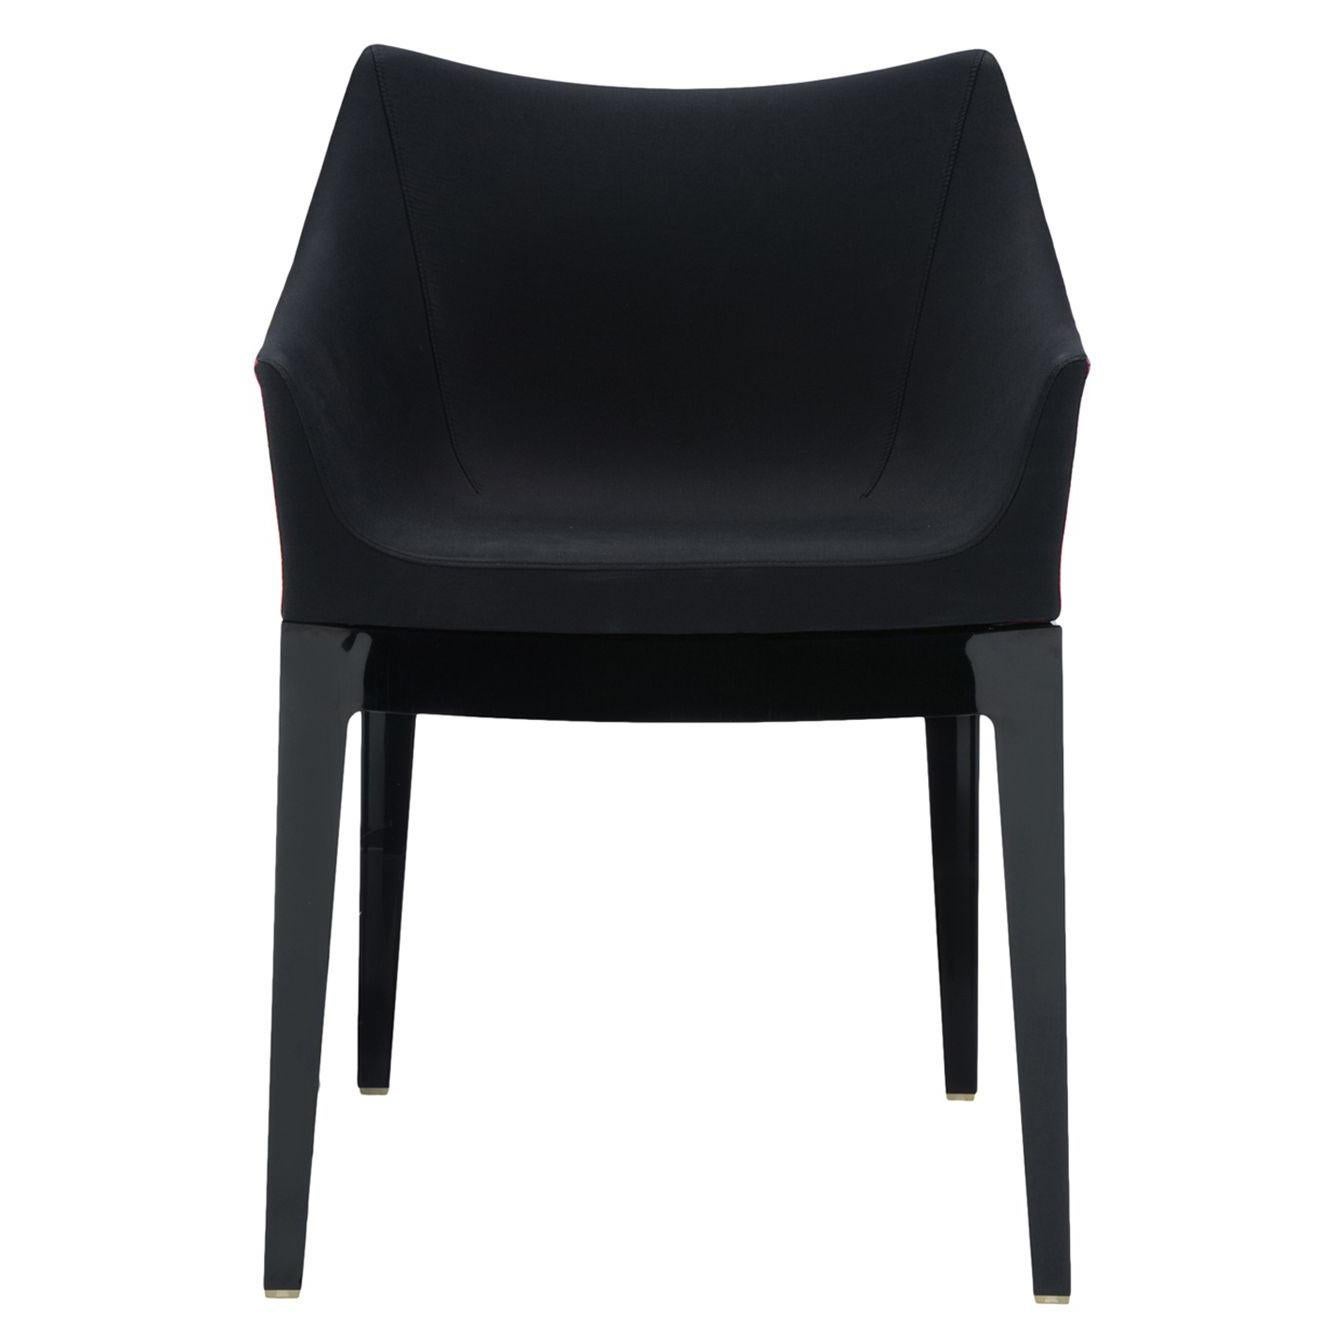 Grâce à sa palette de couleurs neutres, cette chaise est le meuble idéal à insérer dans les intérieurs résidentiels sophistiqués ou les projets contractuels les plus raffinés.
 